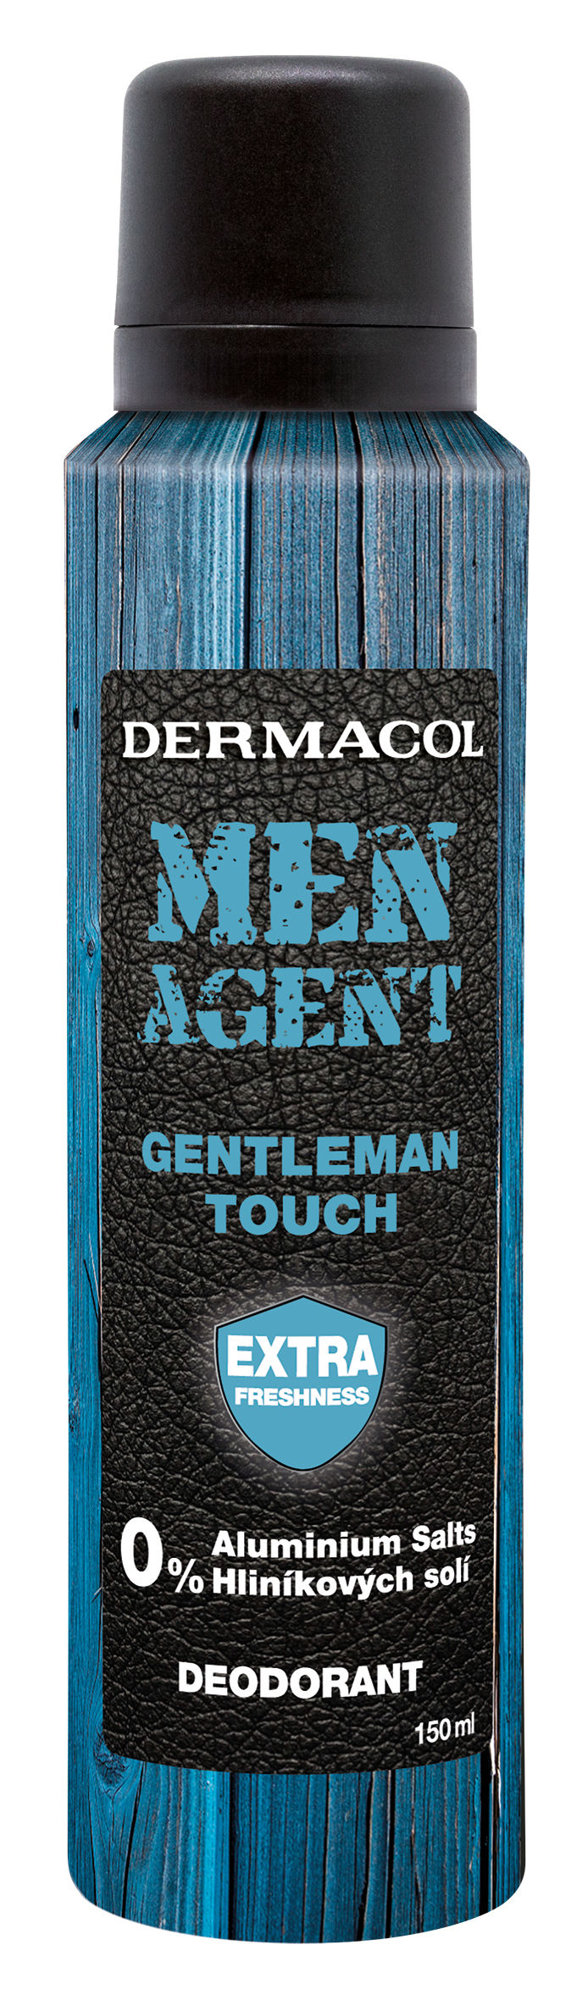 Dermacol Men Agent Gentleman Touch dezodorantas